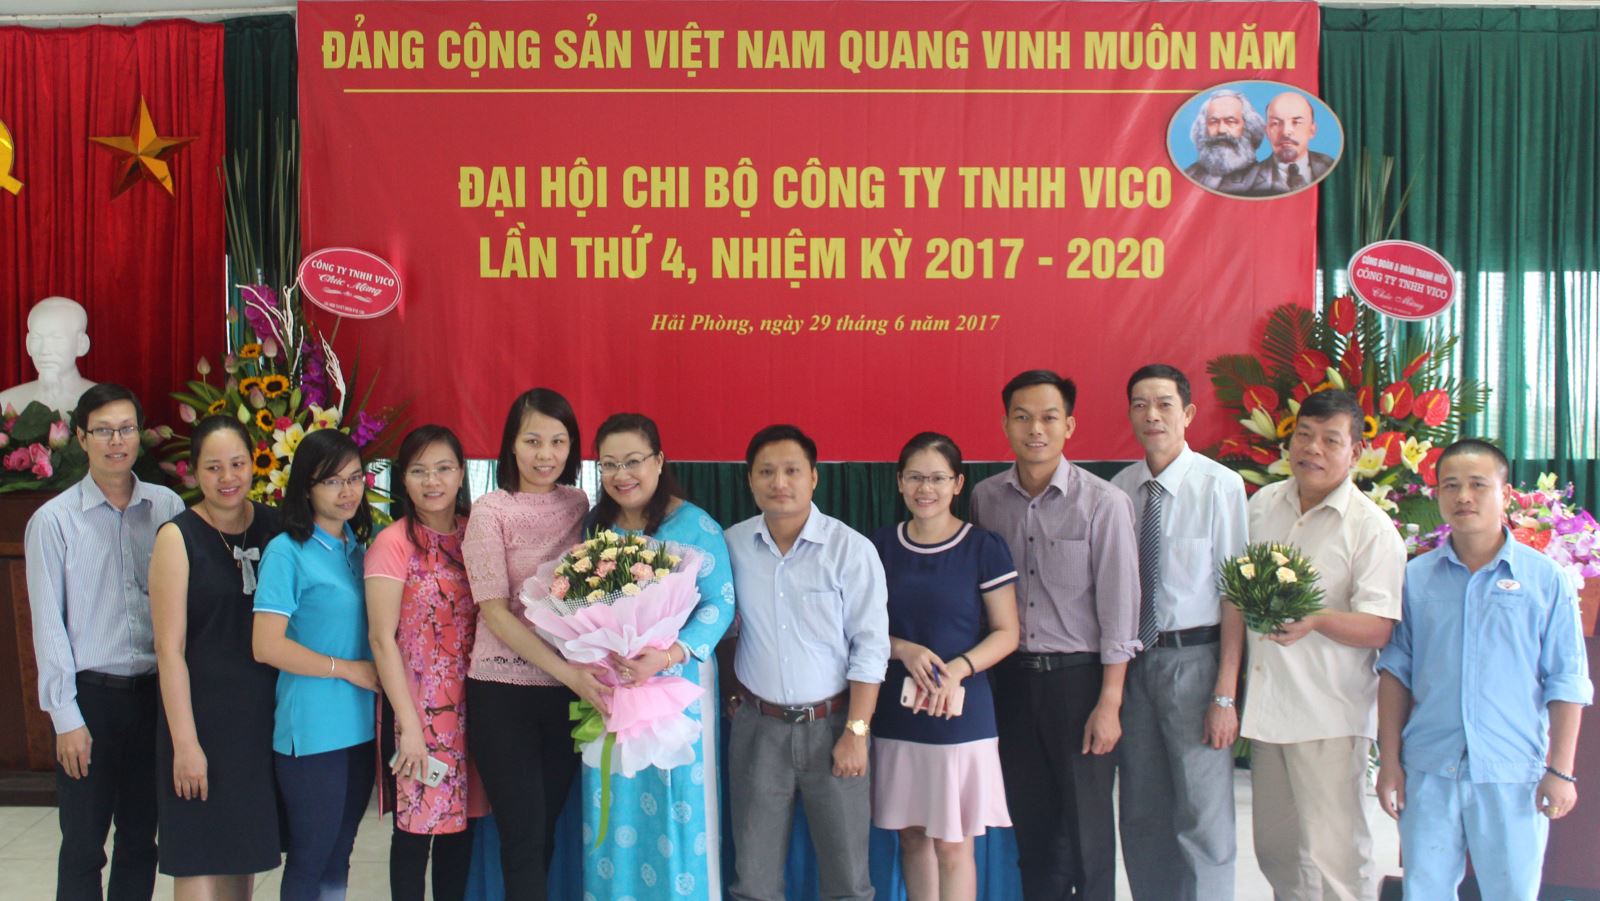 Dai hoi Chi bo cong ty TNHH VICO lan thu 4, nhiem ky 2017 - 2020